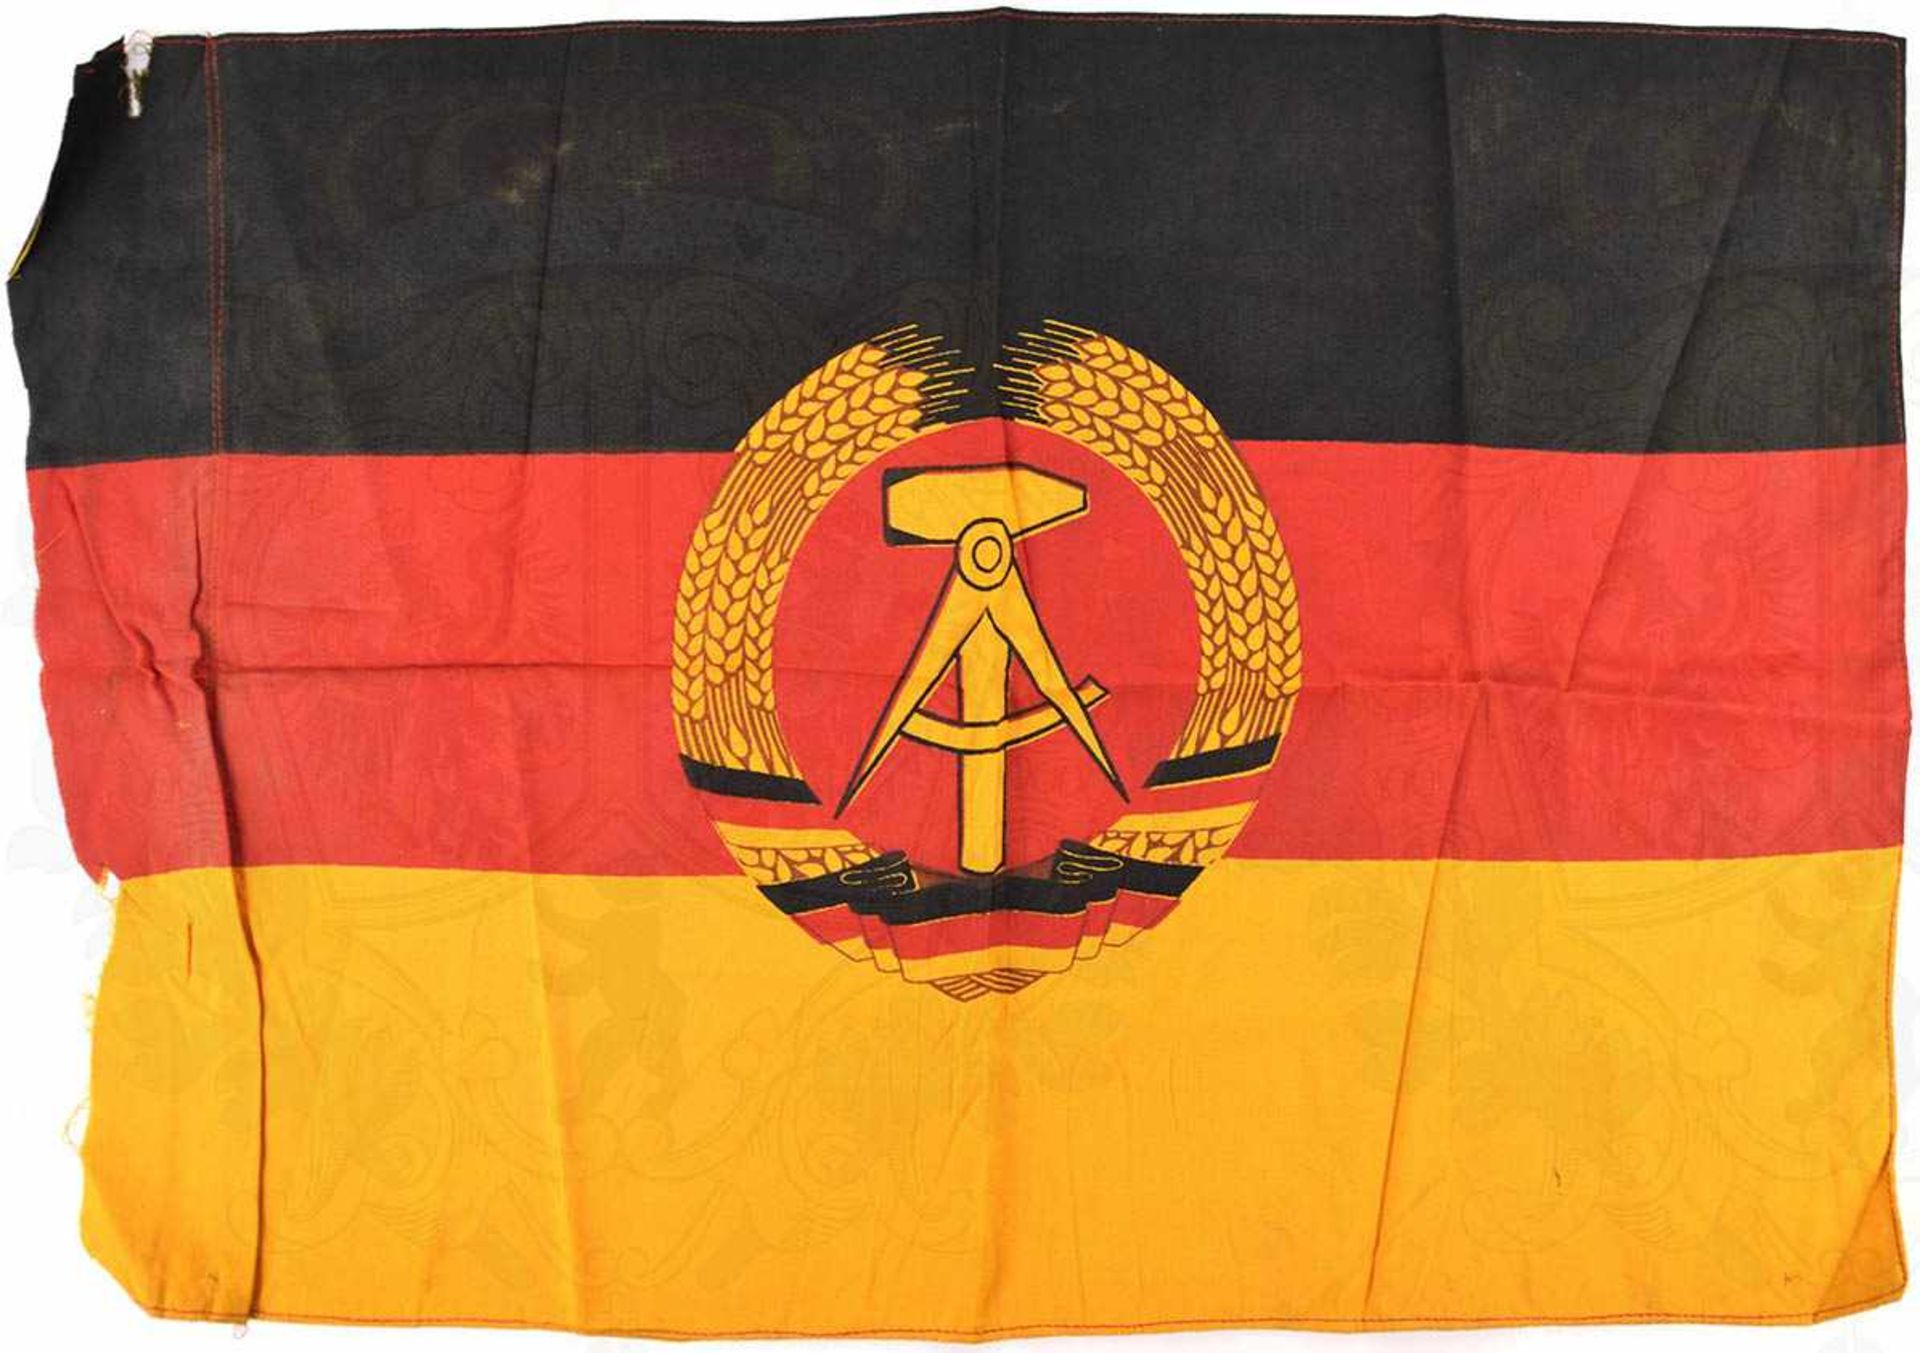 STAATSFAHNE, schwarz/rot/goldenes Leinen, mittig beids. aufgenähtes Wappen, Liek mit Durchzug, - Image 2 of 2